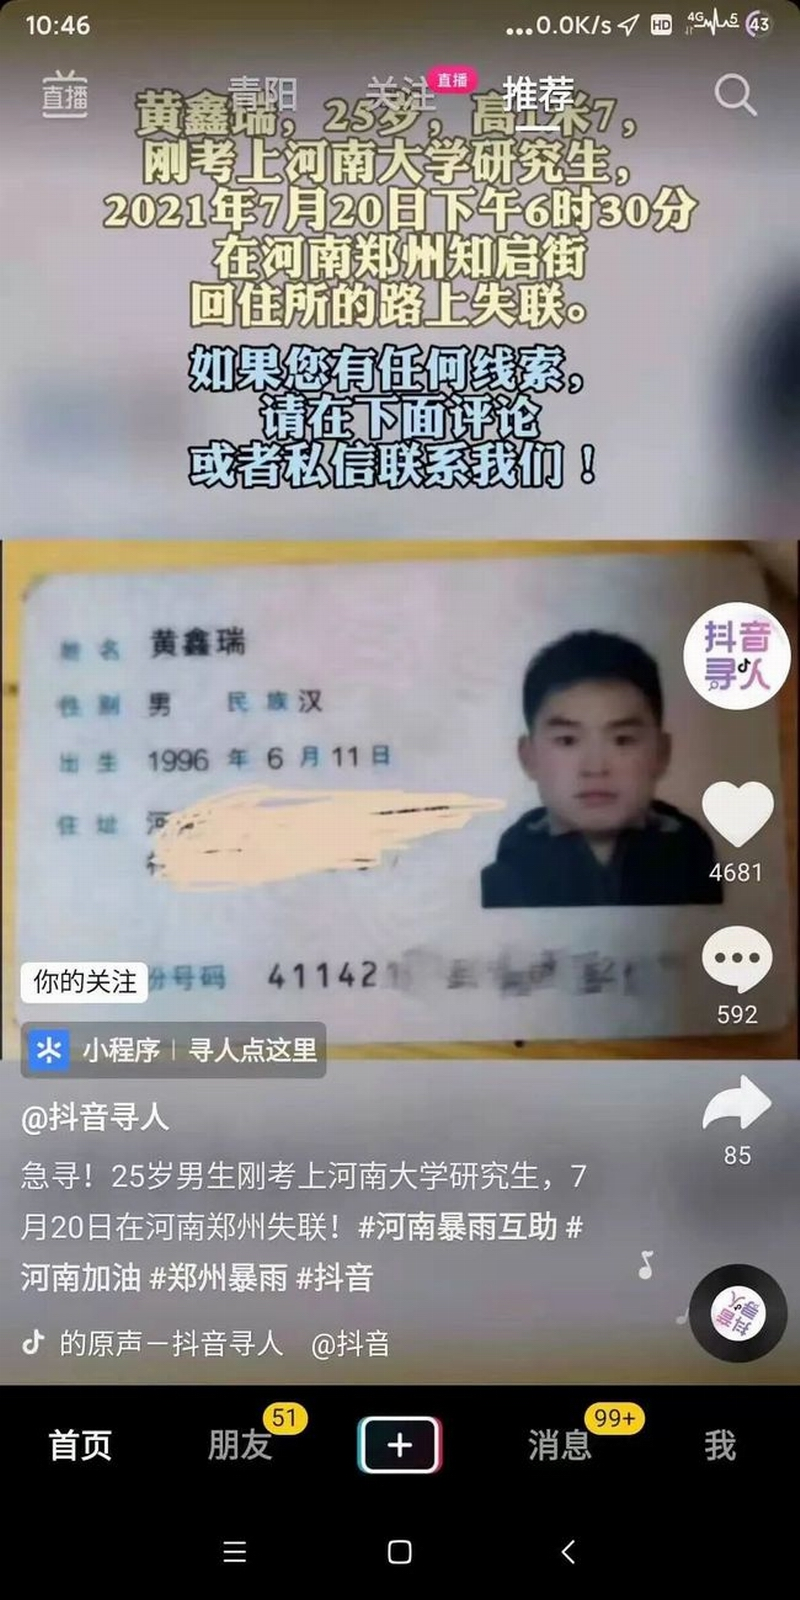 这是第一张照片，这是一个刚考上研究生的小伙儿，才25岁，刚考上河南大学研究生，原本可以继续深造的他，失踪了。.png